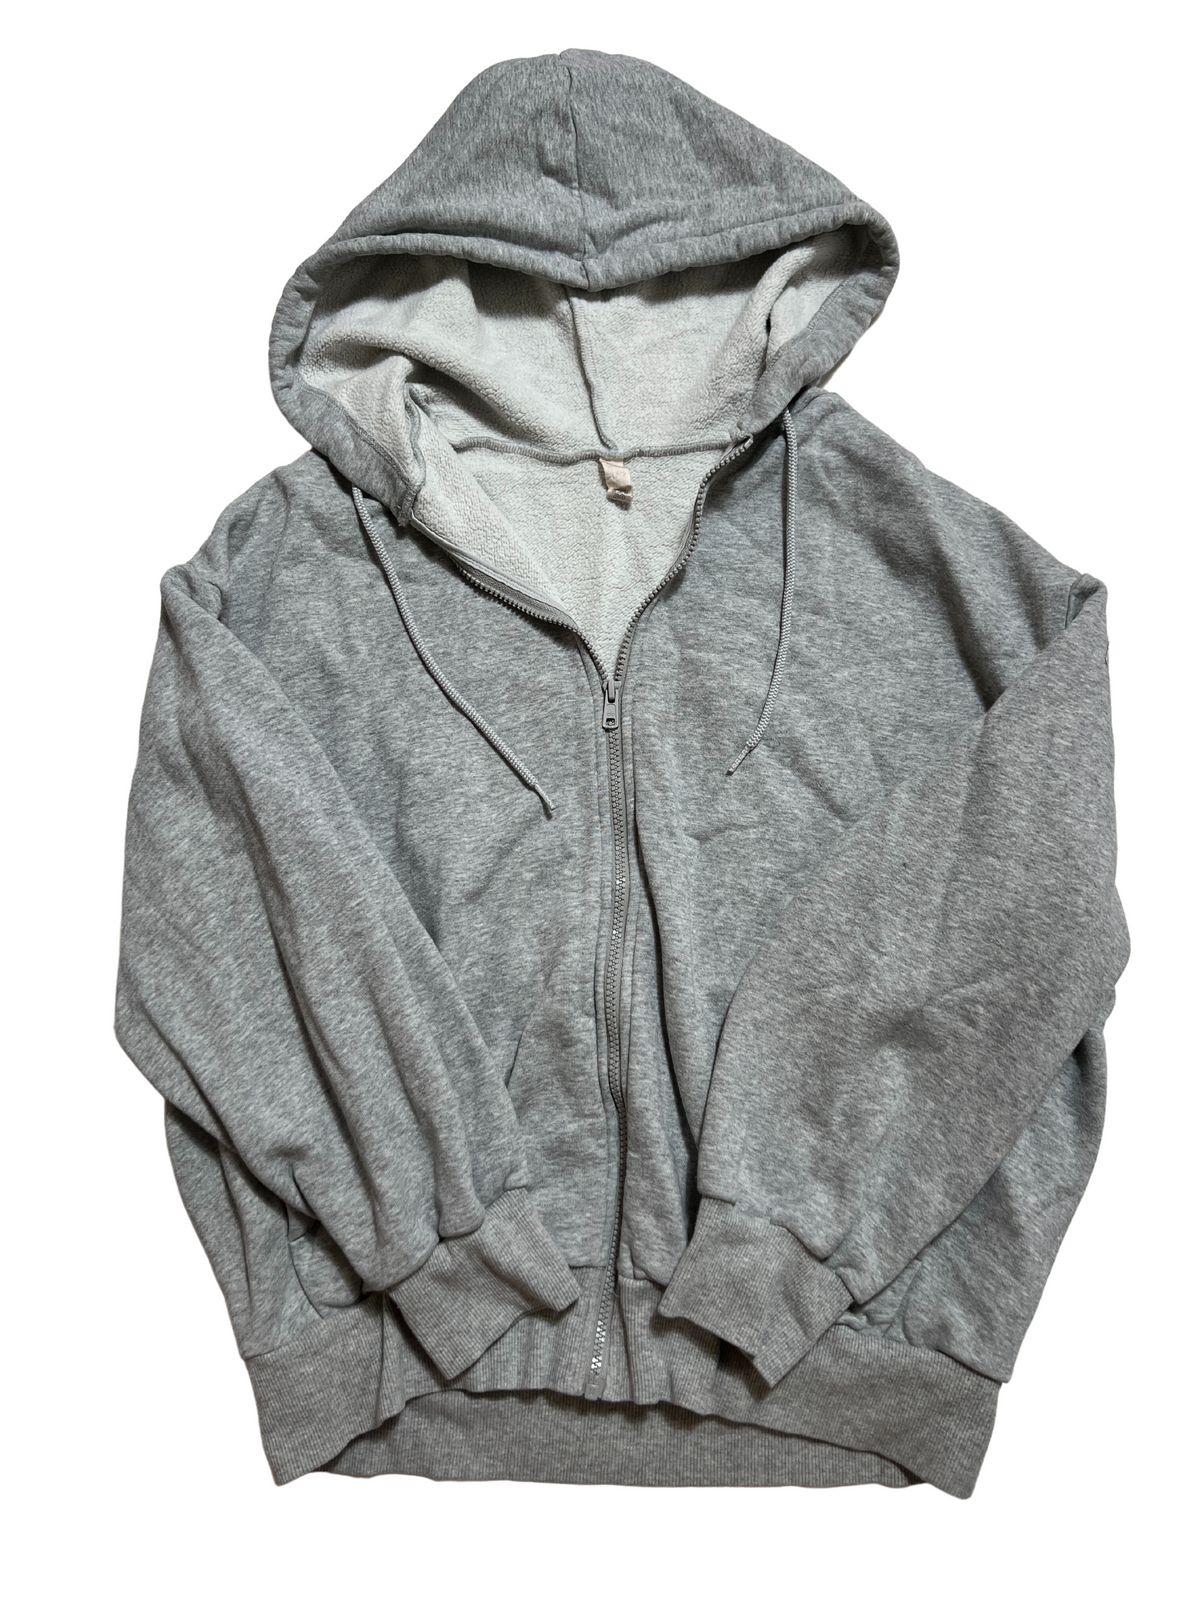 Alo - Gray Oversized Zip Up Hoodie - Sweatshirt